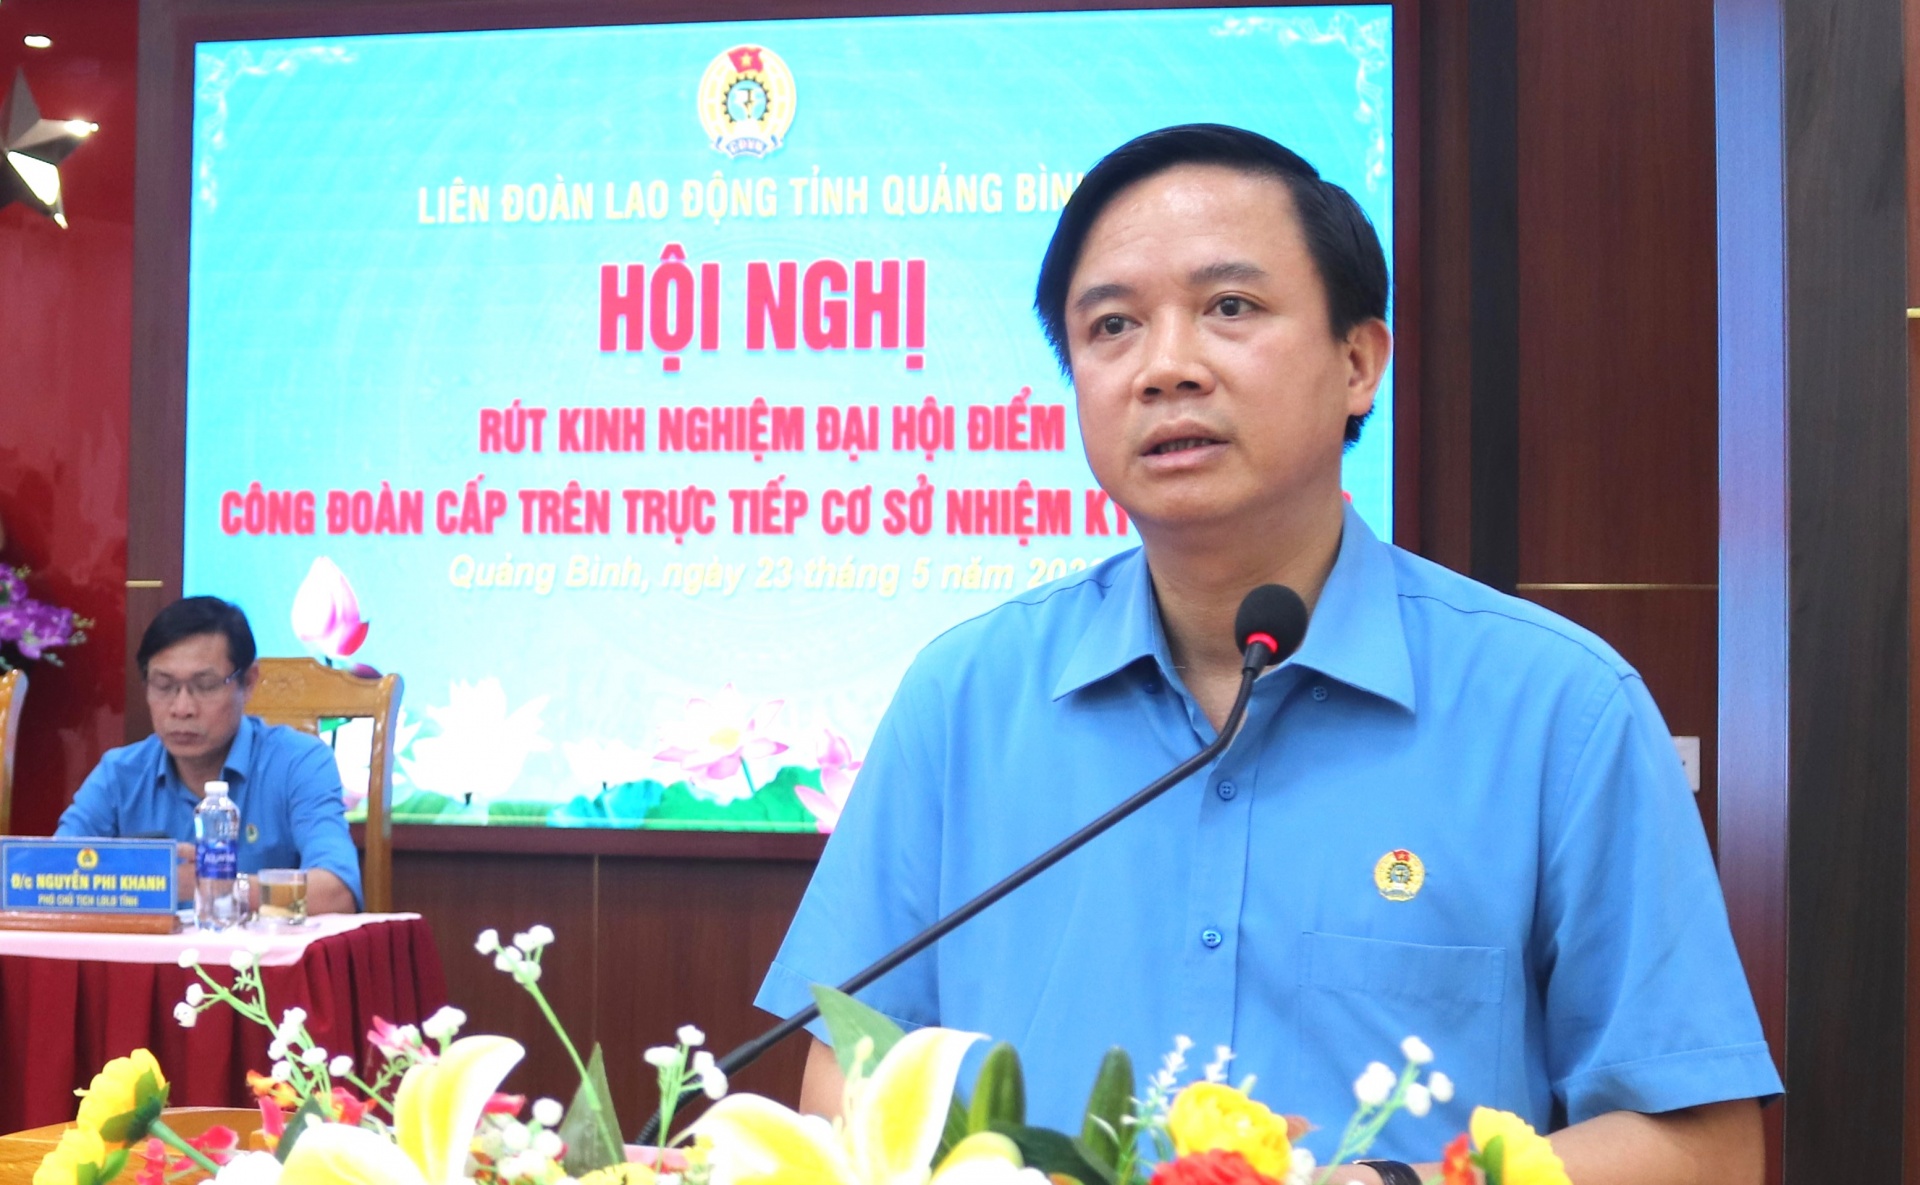 LĐLĐ tỉnh Quảng Bình tổ chức rút kinh nghiệm đại hội điểm cấp trên trực tiếp cơ sở